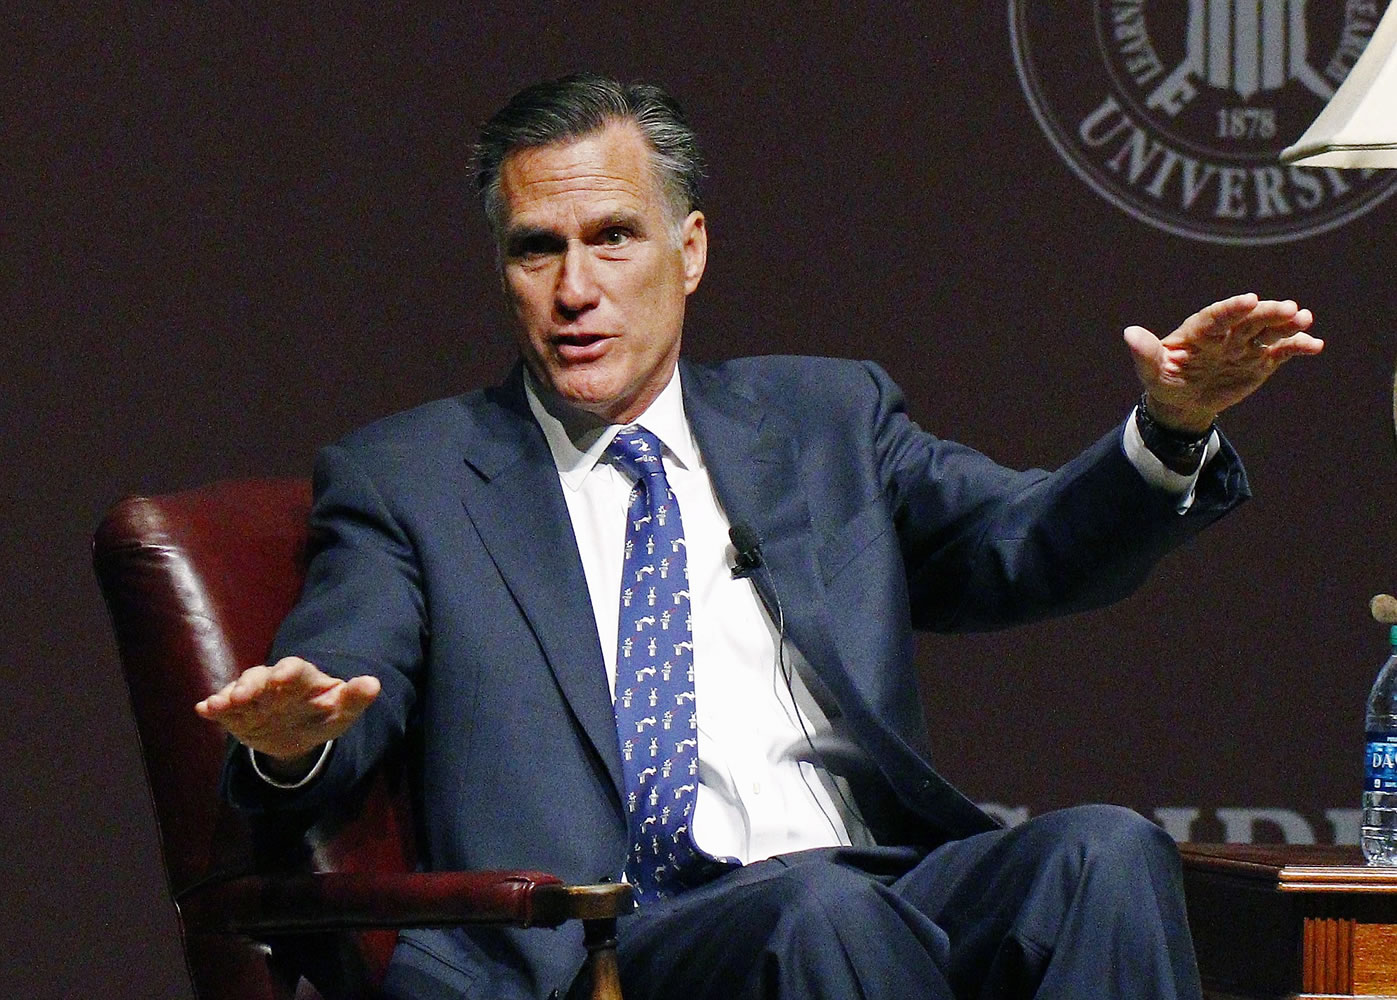 Former GOP presidential candidate Mitt Romney speaks at Mississippi State University in Starkville, Miss.